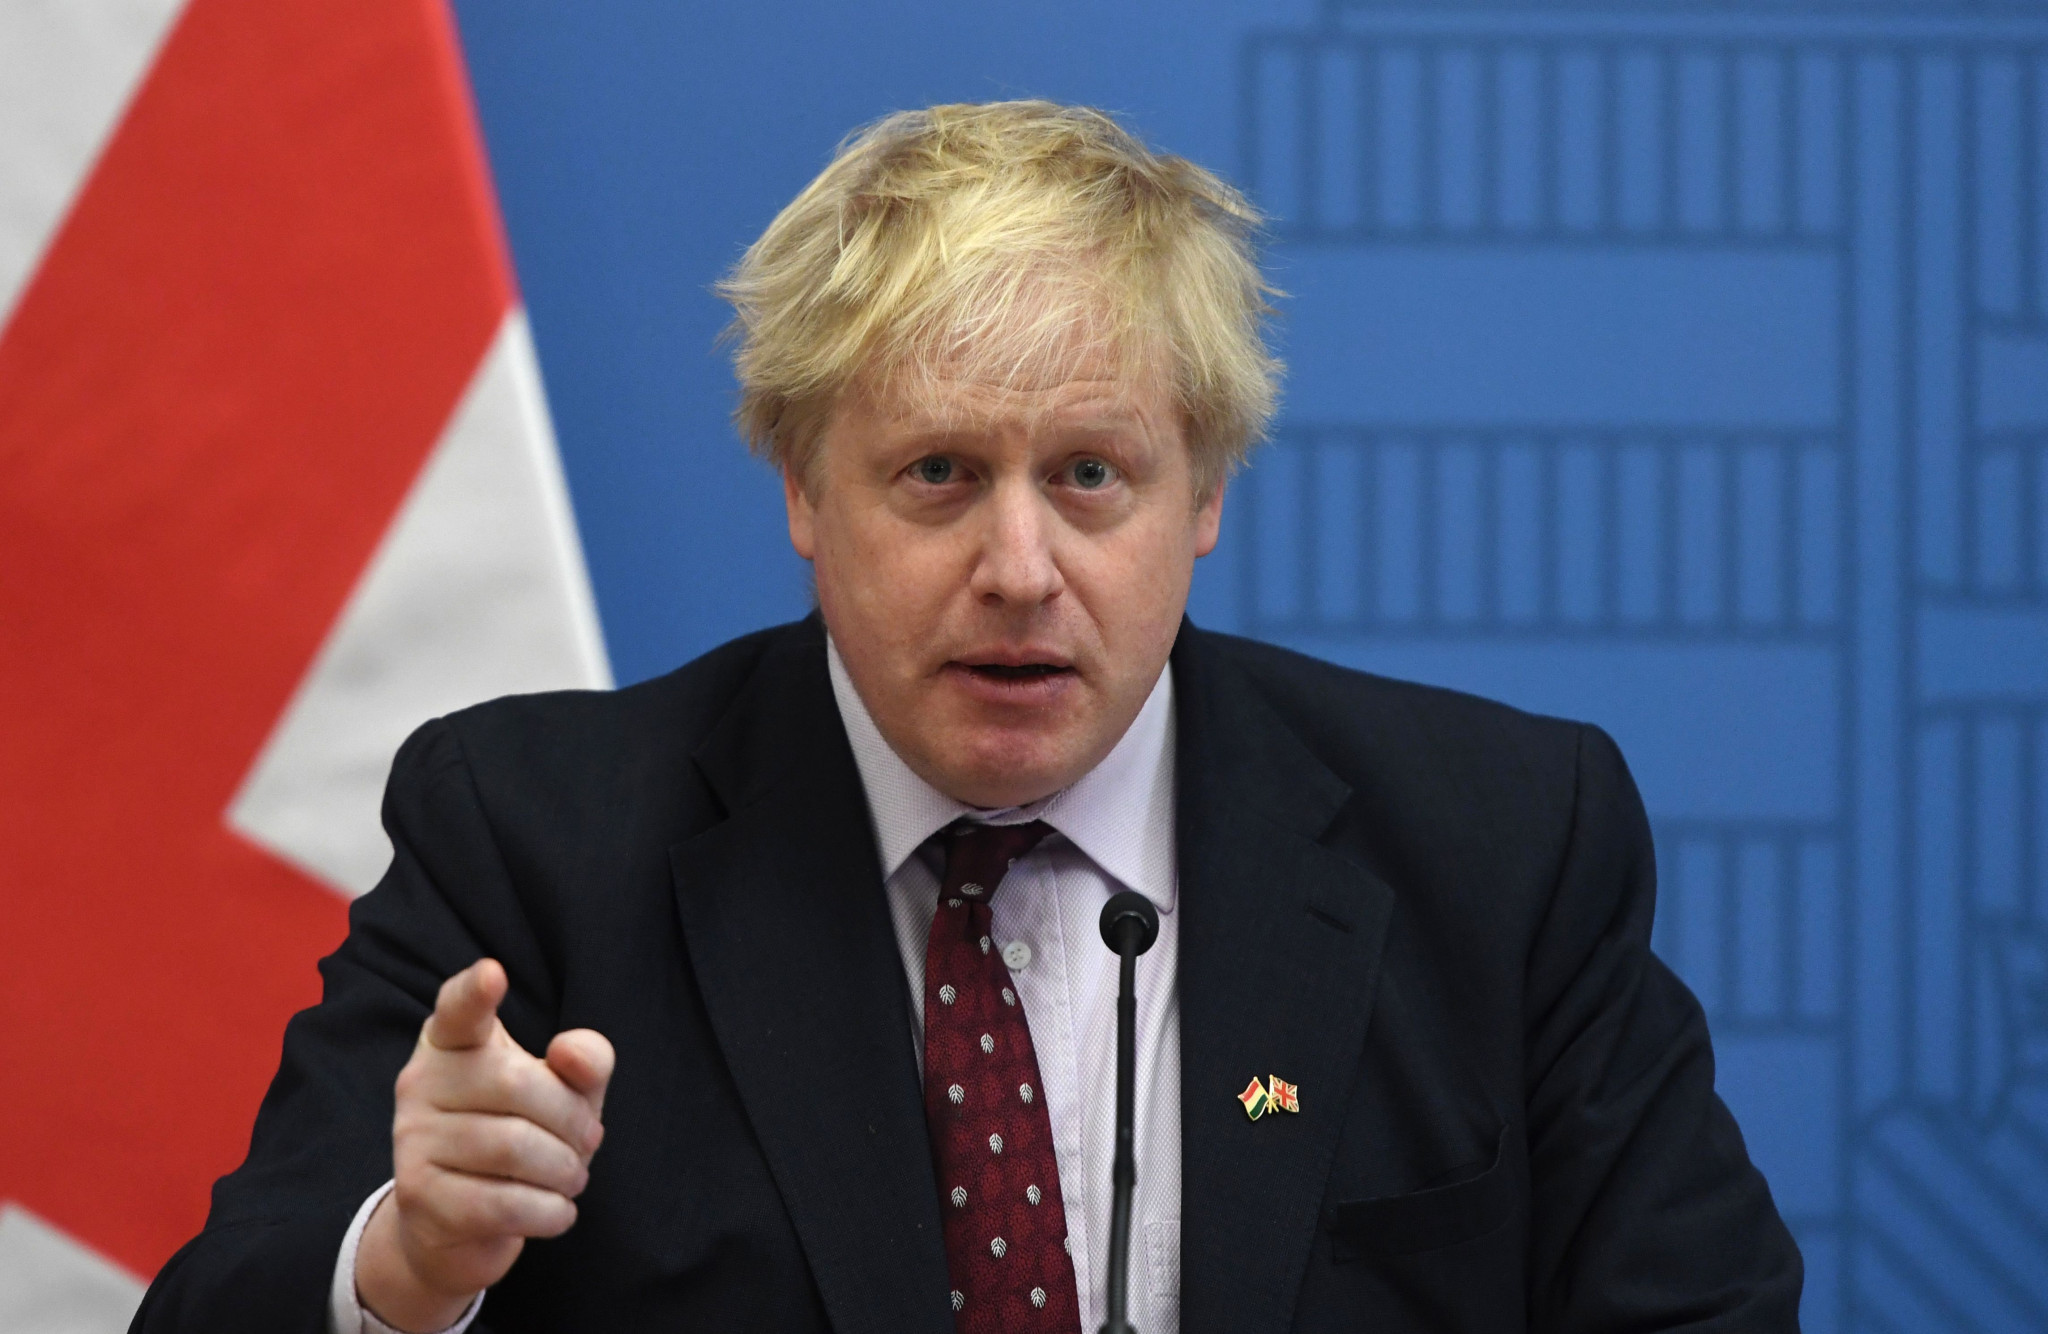 UK Prime Minister Johnson faces social media backlash after suggesting Ukraine should get World Cup bye 